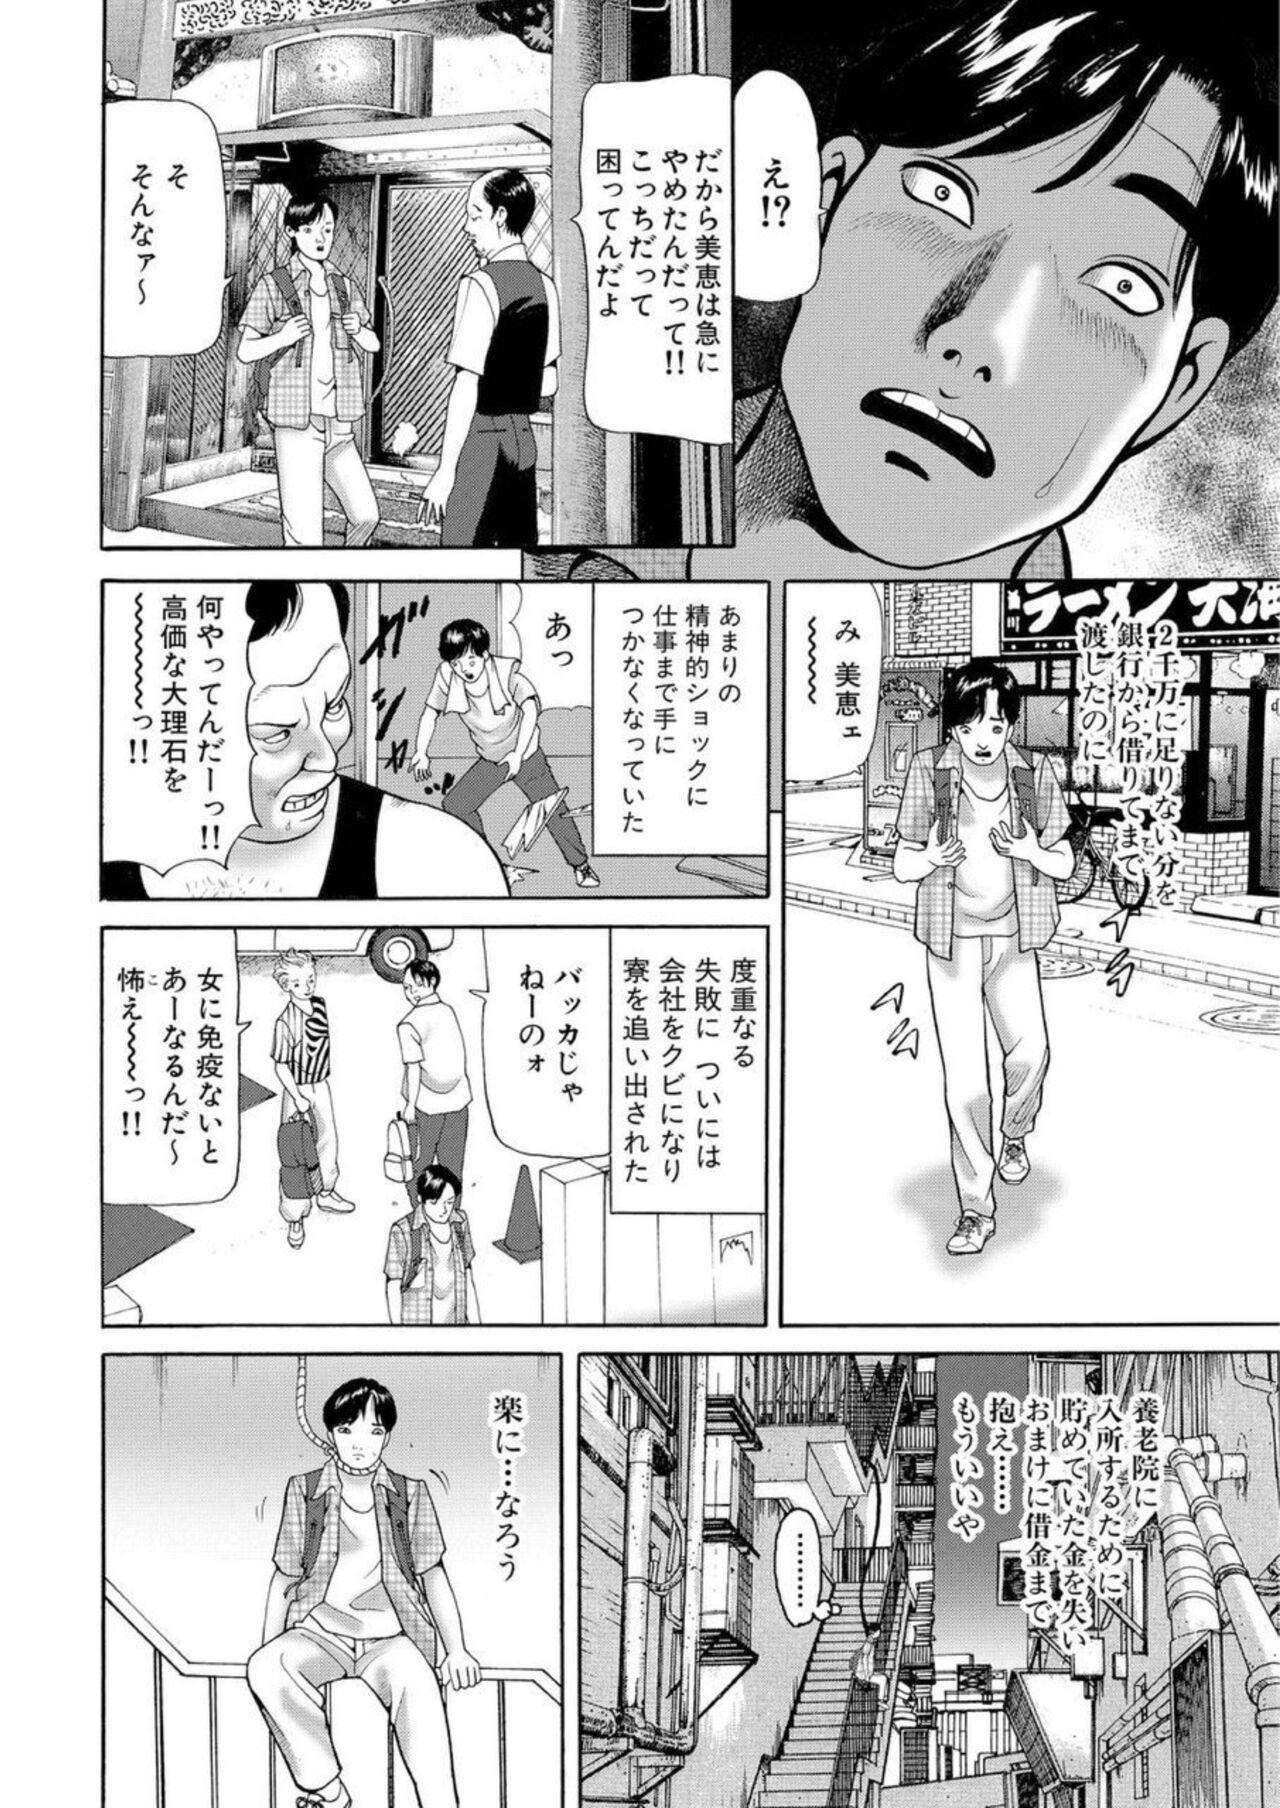 Boy Nyobon Jitsuroku Rape Saiban 1 Cheating - Page 11